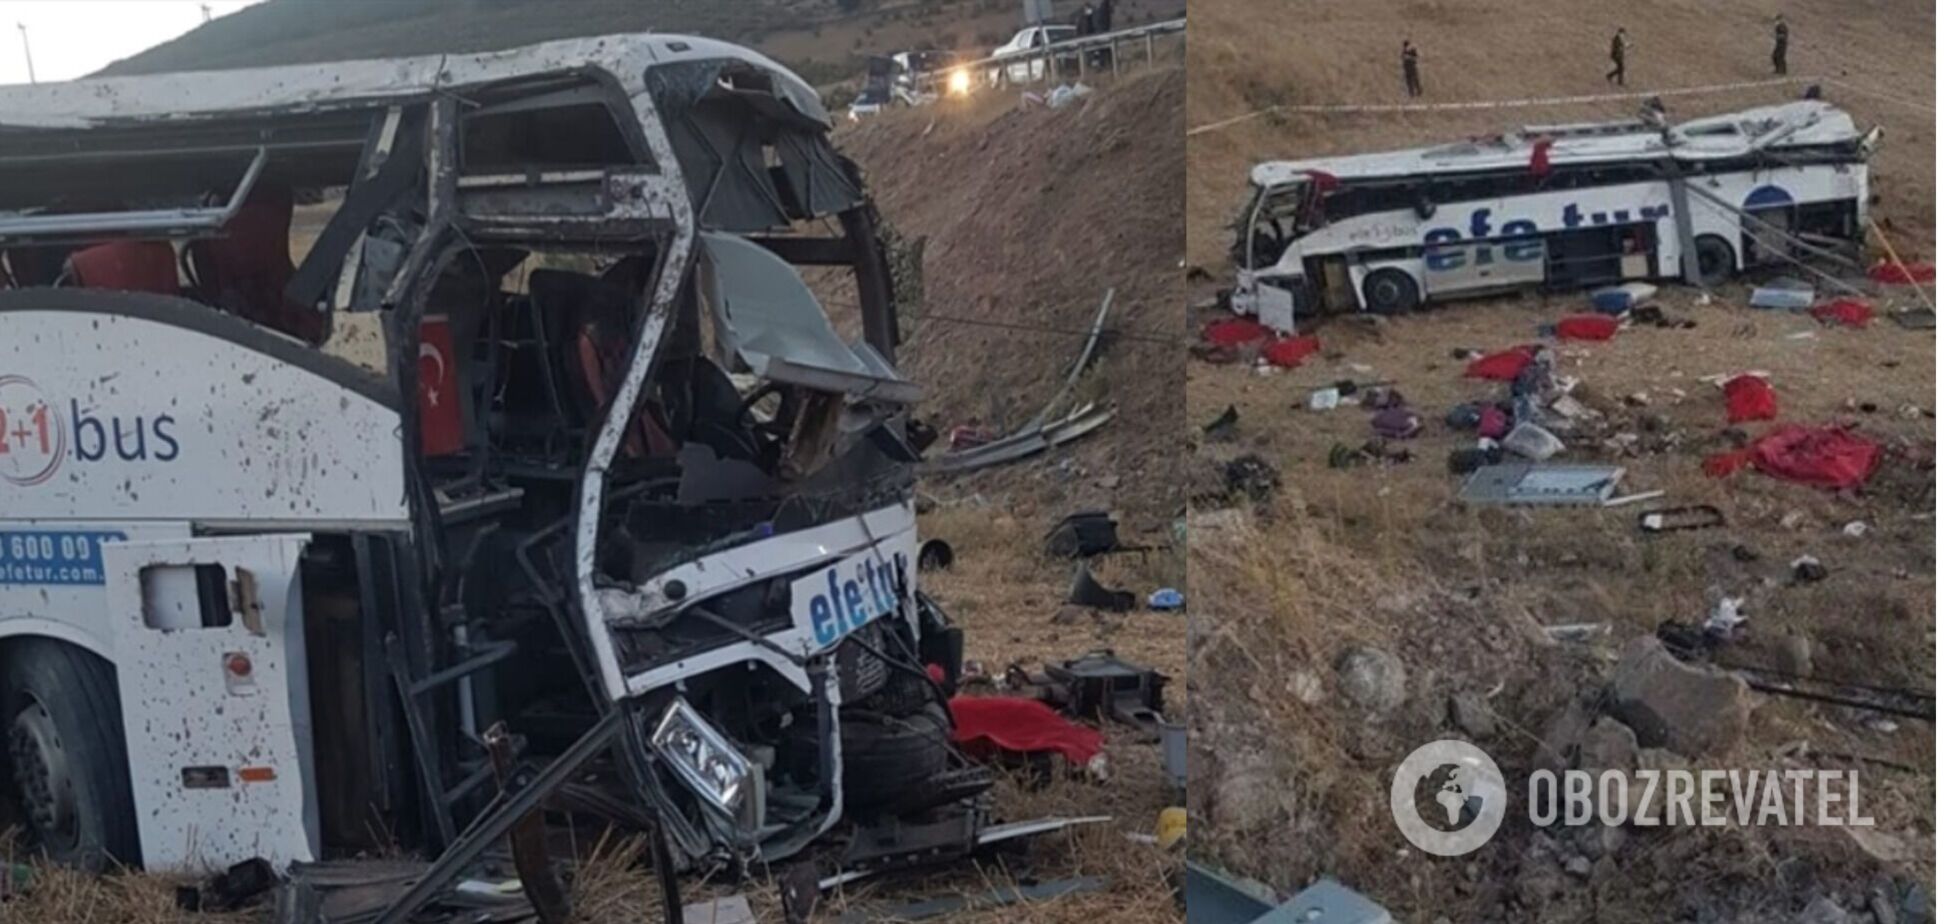 У Туреччині автобус злетів з дороги і перекинувся, загинули 14 людей, багато постраждалих. Фото